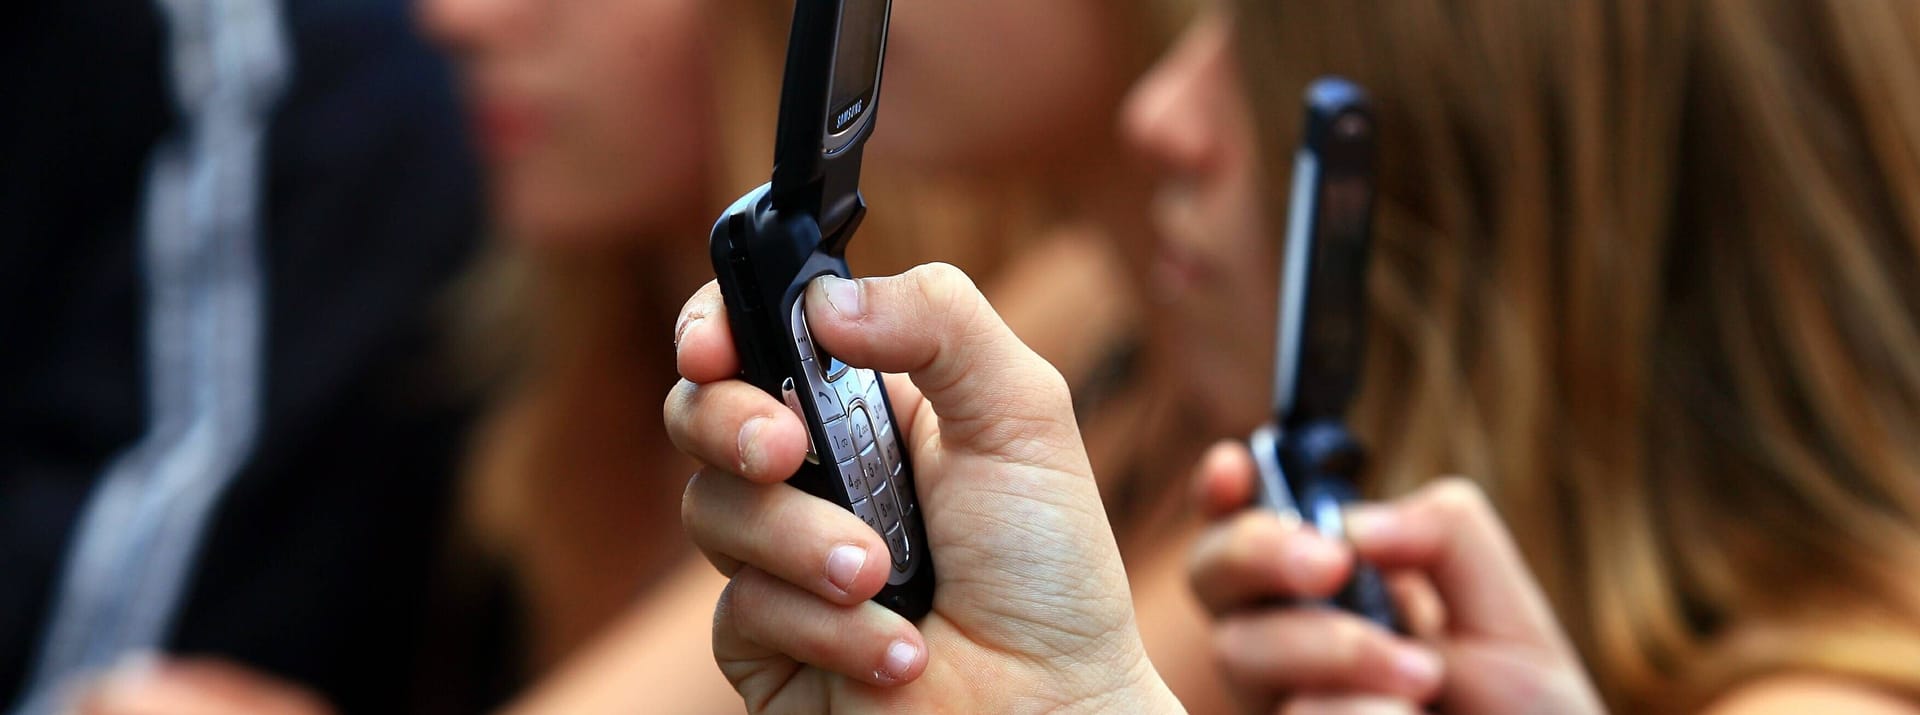 Mit dem "Communicator" – ein Gerät, das einem Klapphandy ähnelt – konnte sich die Besatzung untereinander verständigen. In den 1960er Jahren war das noch Utopie, heute hat fast jeder Deutsche ein mobiles Telefon. "Da kann man einen Haken dran machen", erklärt Vogel. Die goldene Ära der Smartphones startete sogar mit einem gleichnamigen Modell. Der "Nokia 9000 Communicator" kam 1996 fast genau 30 Jahre nach Ausstrahlung der ersten "Star Trek"-Folge in den Handel.